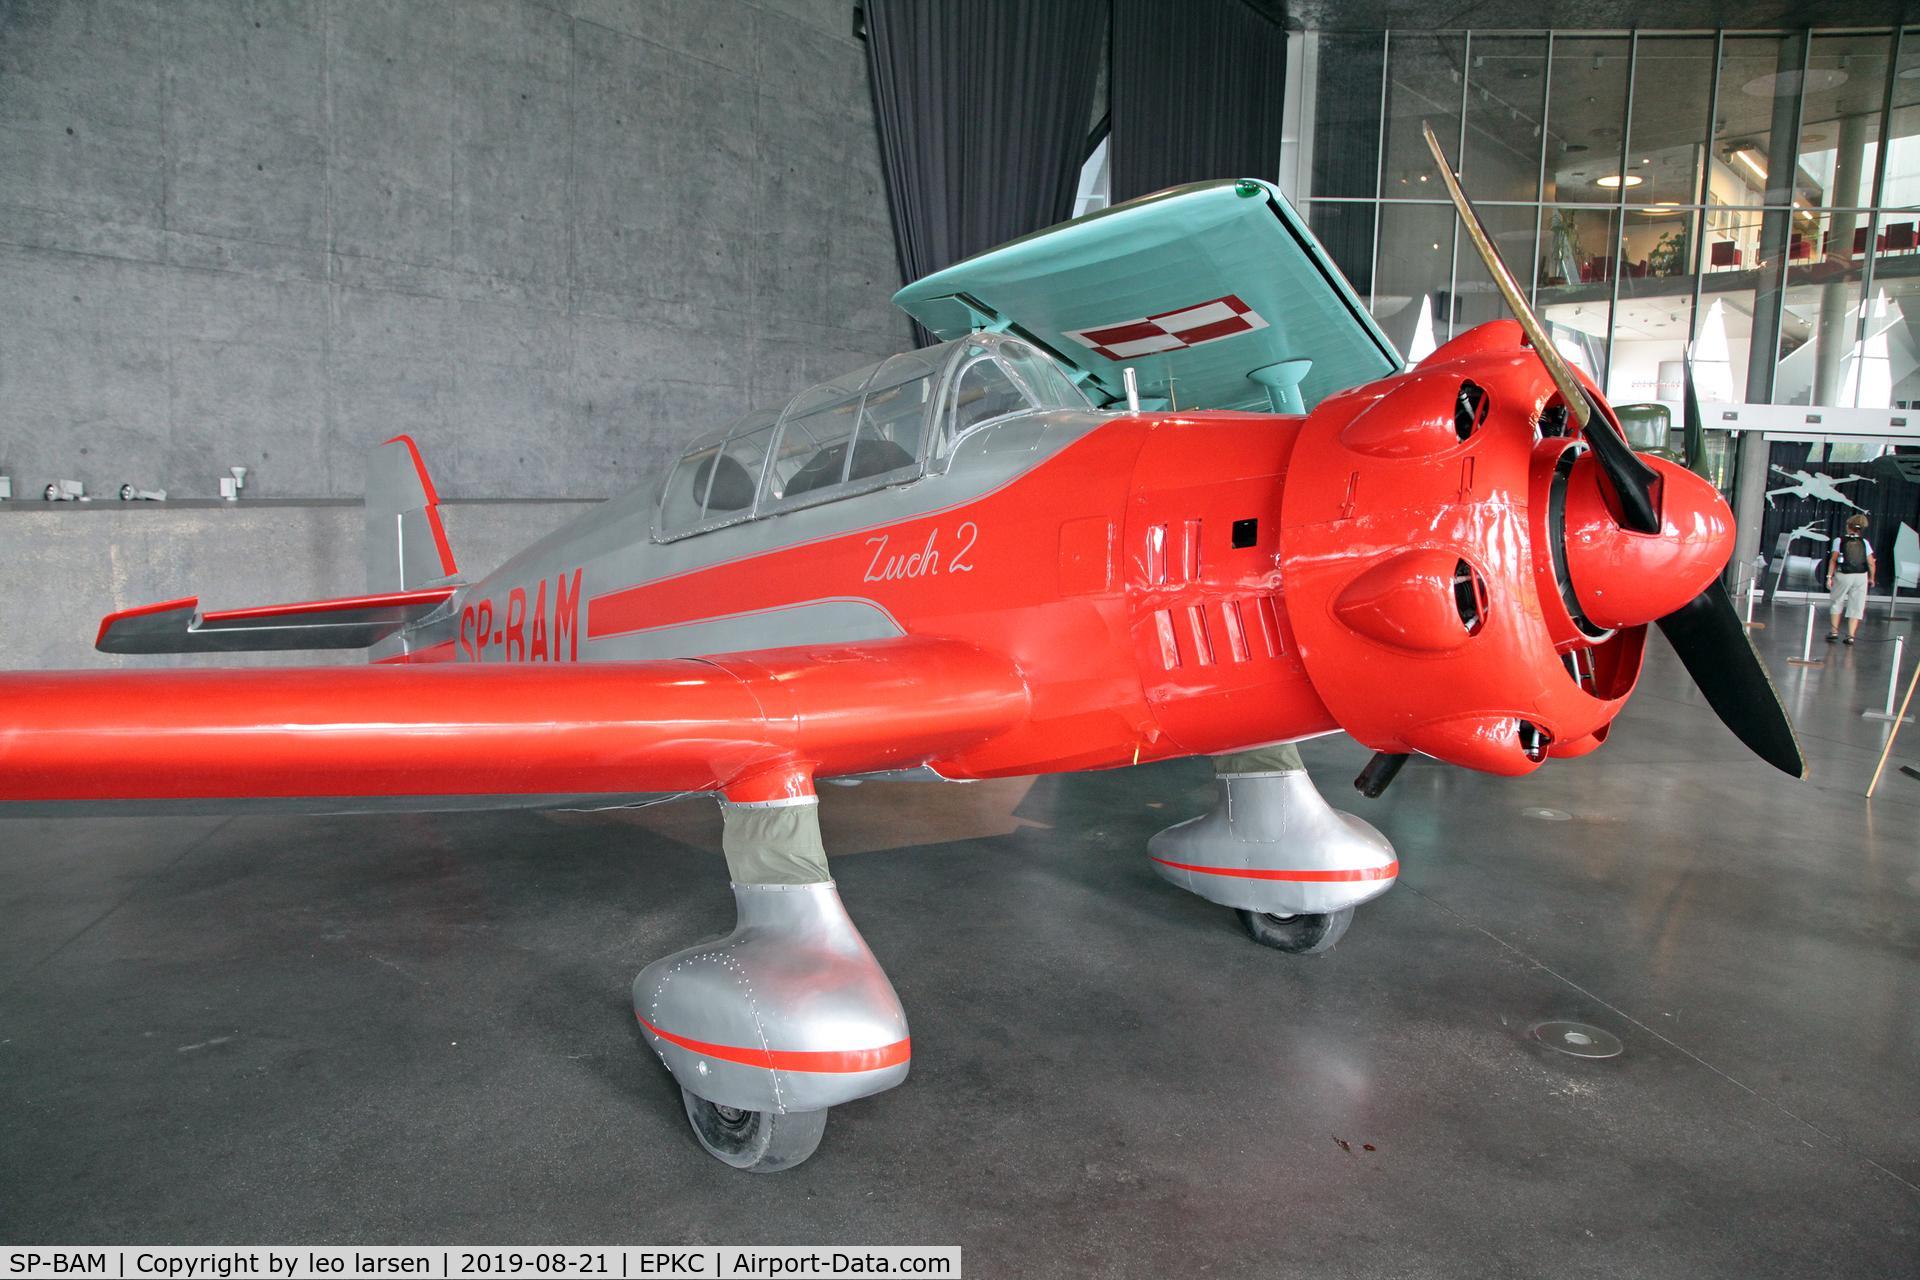 SP-BAM, 1950 LWD Zuch-2 C/N 02, Polish Aviation Museum 21.8.2019